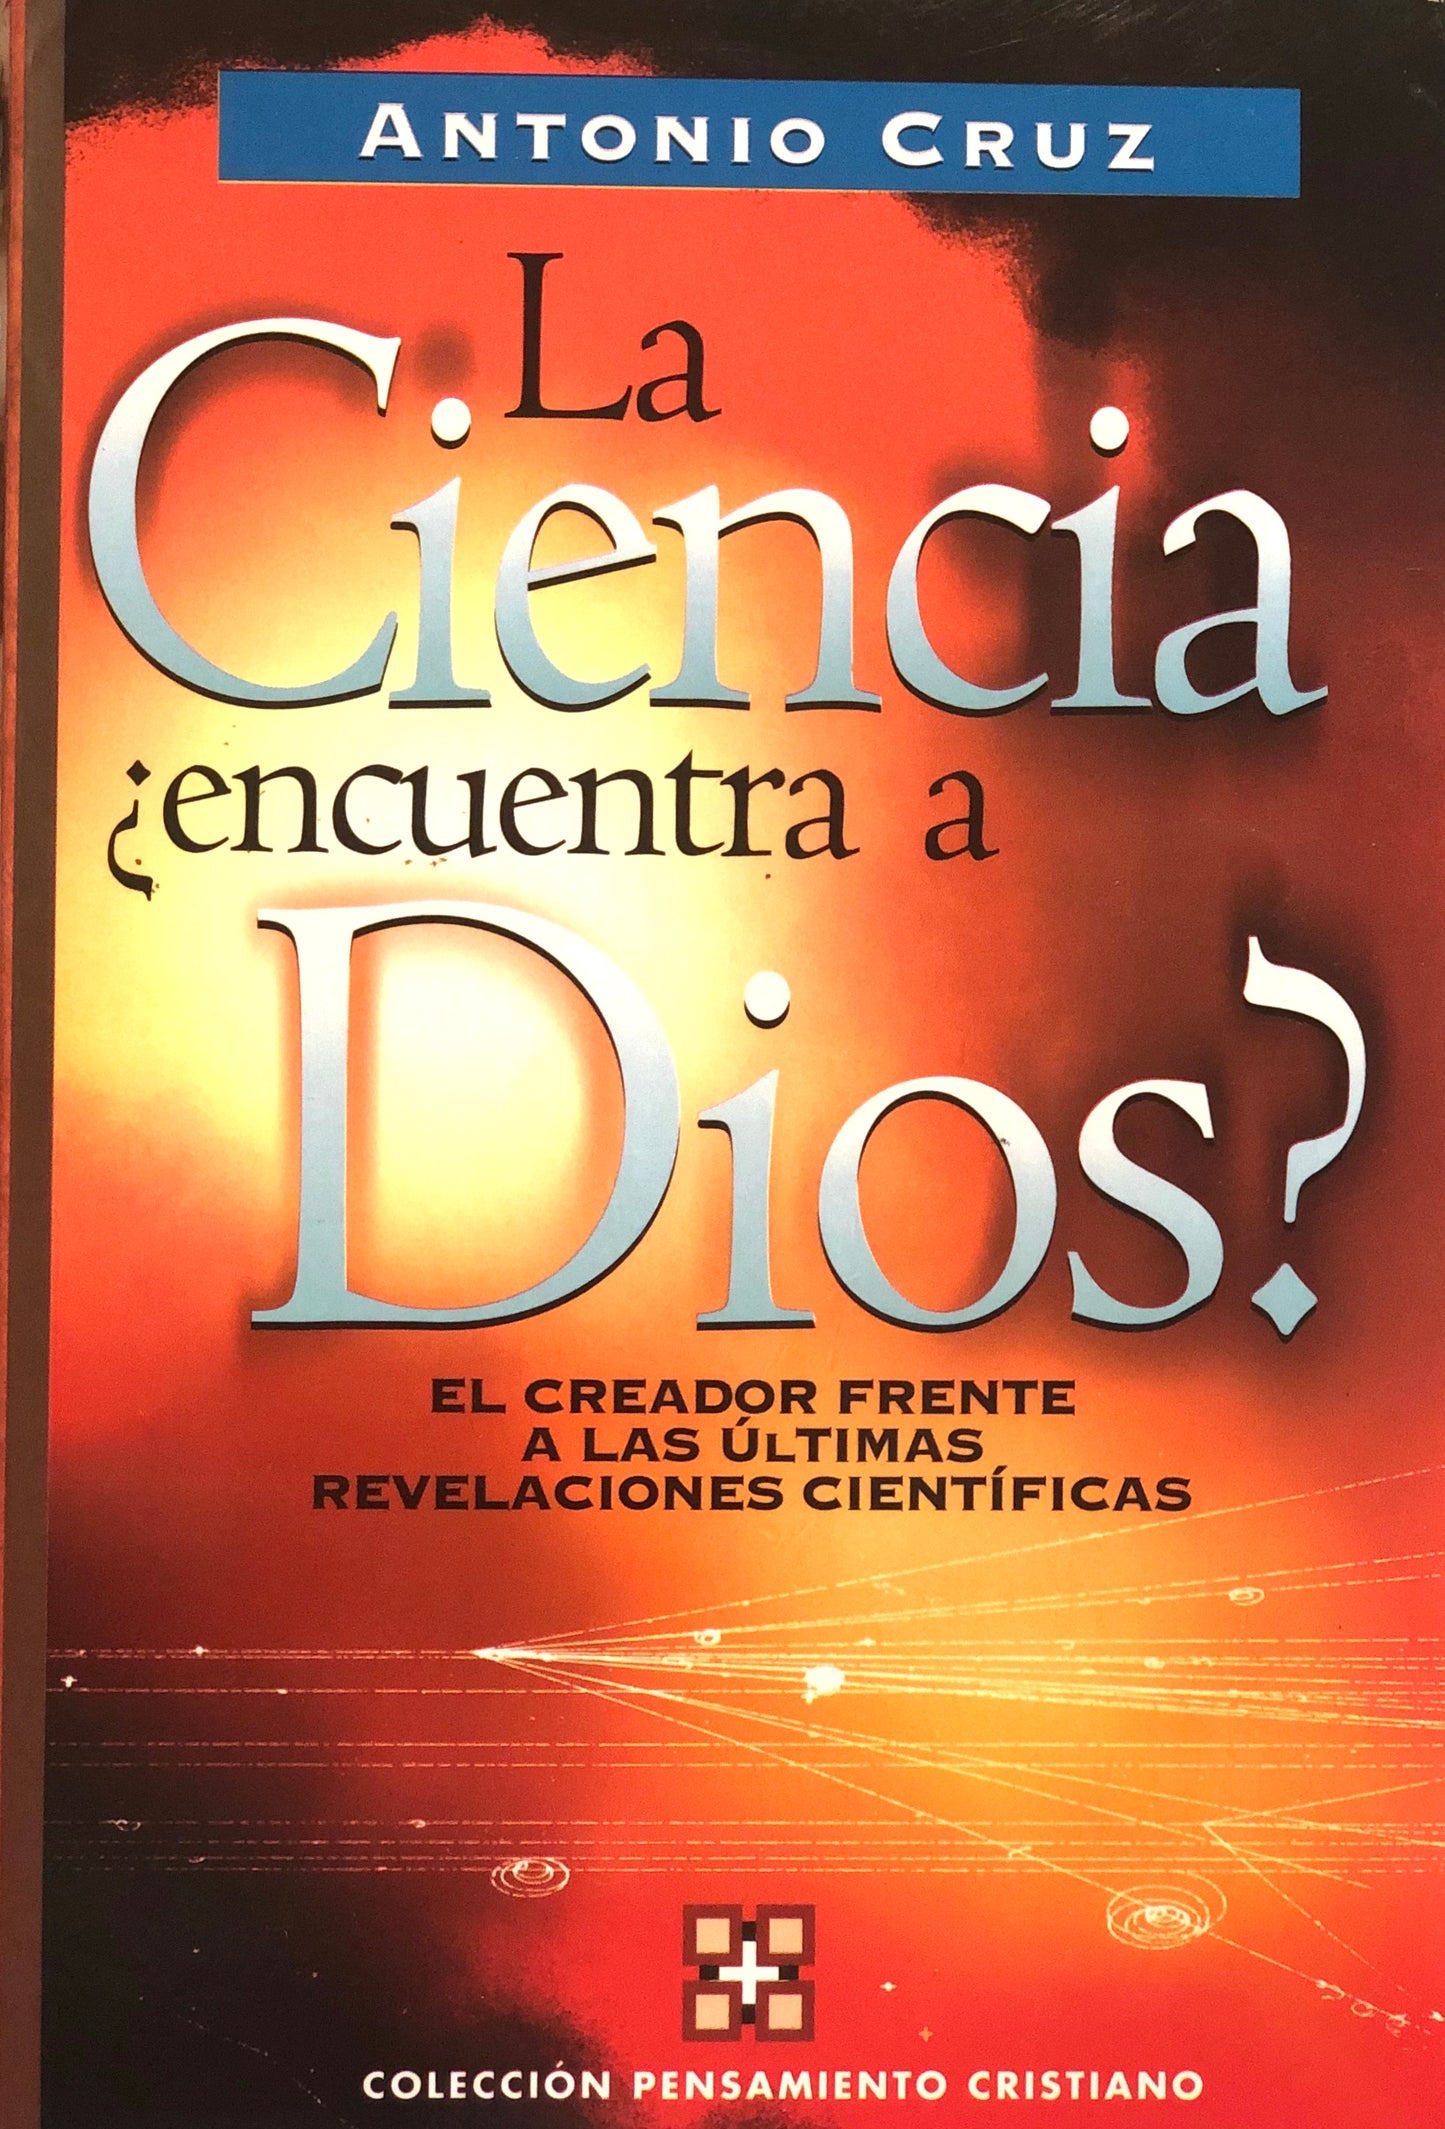 LA CIENCIA ¿Encuentra a Dios? - Antonio Cruz - Editorial Clie